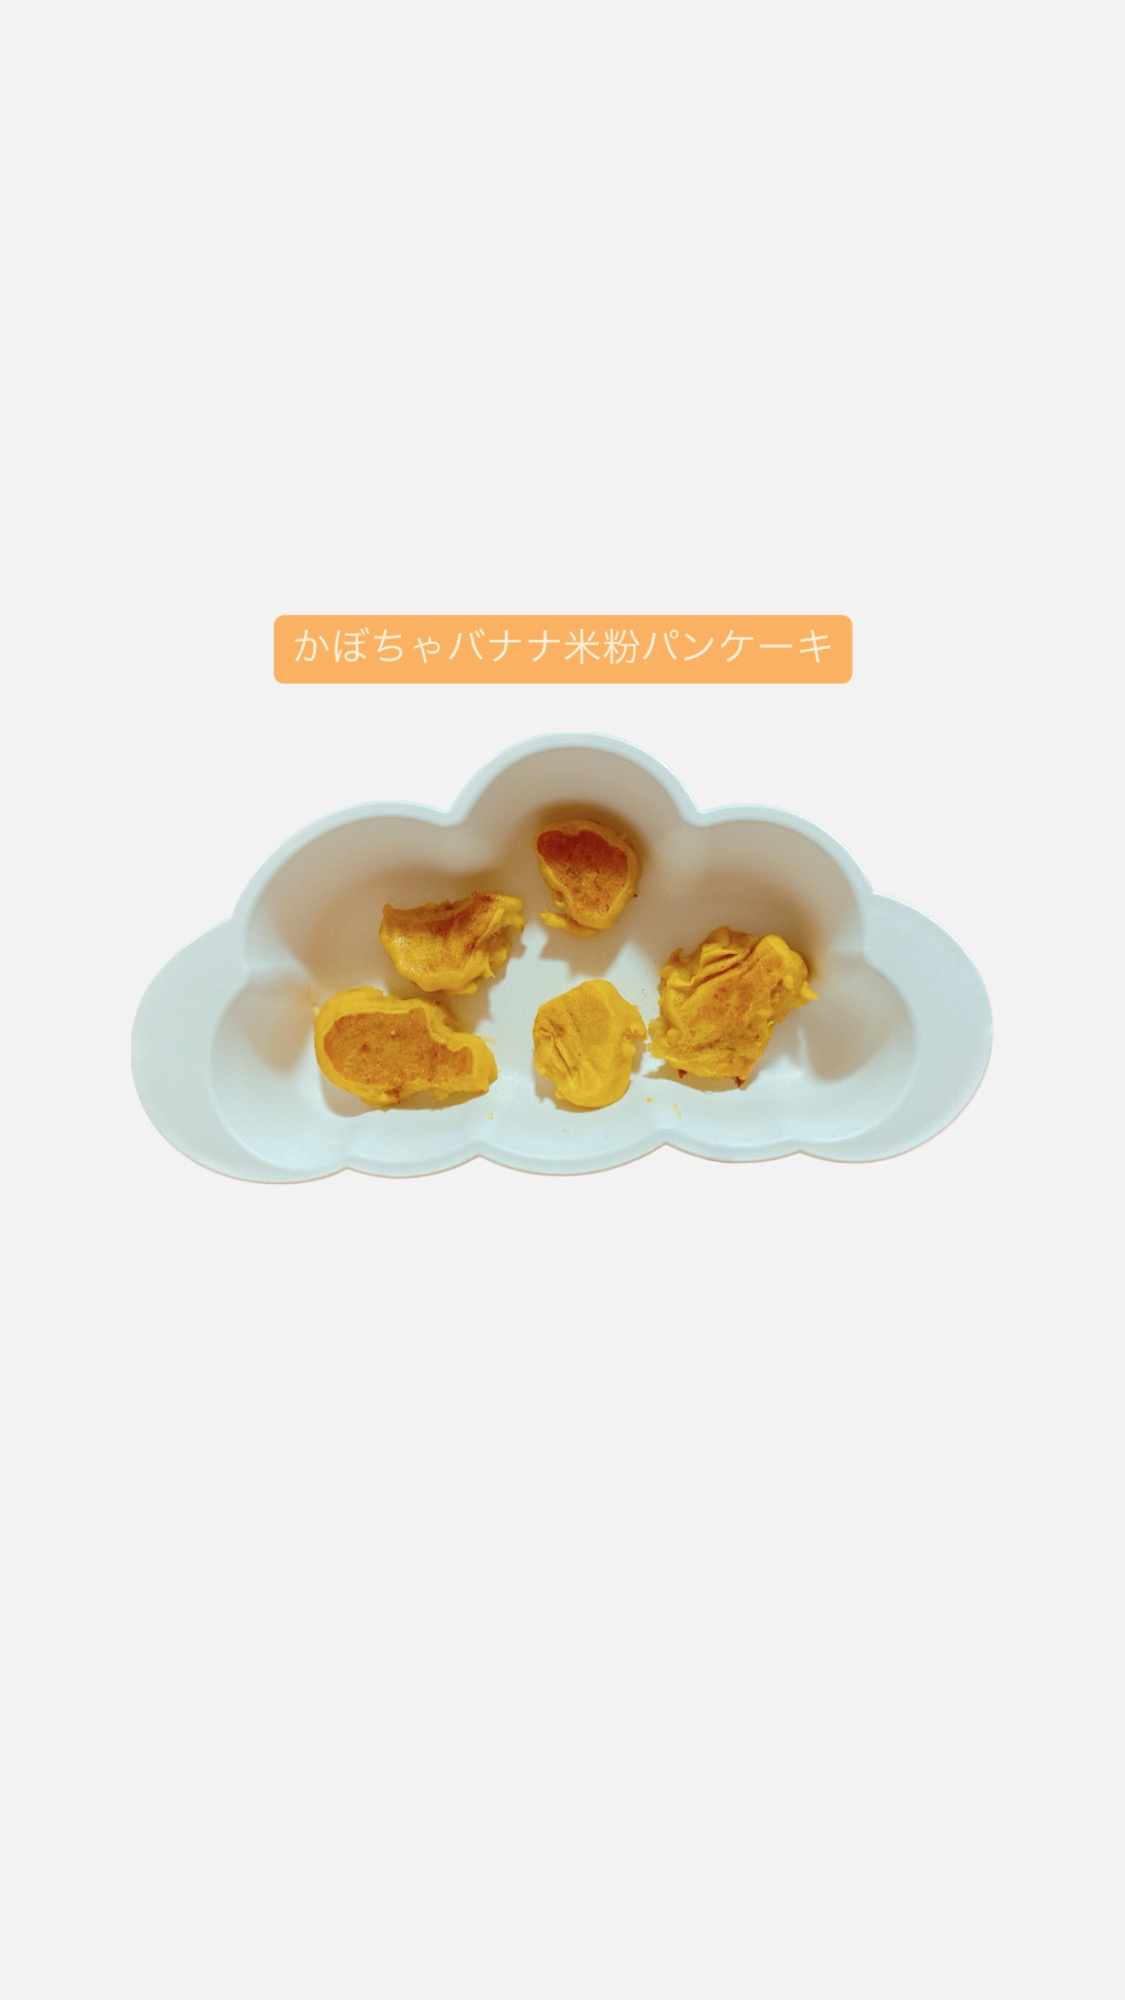 【離乳食後期〜】かぼちゃとバナナの米粉パンケーキ